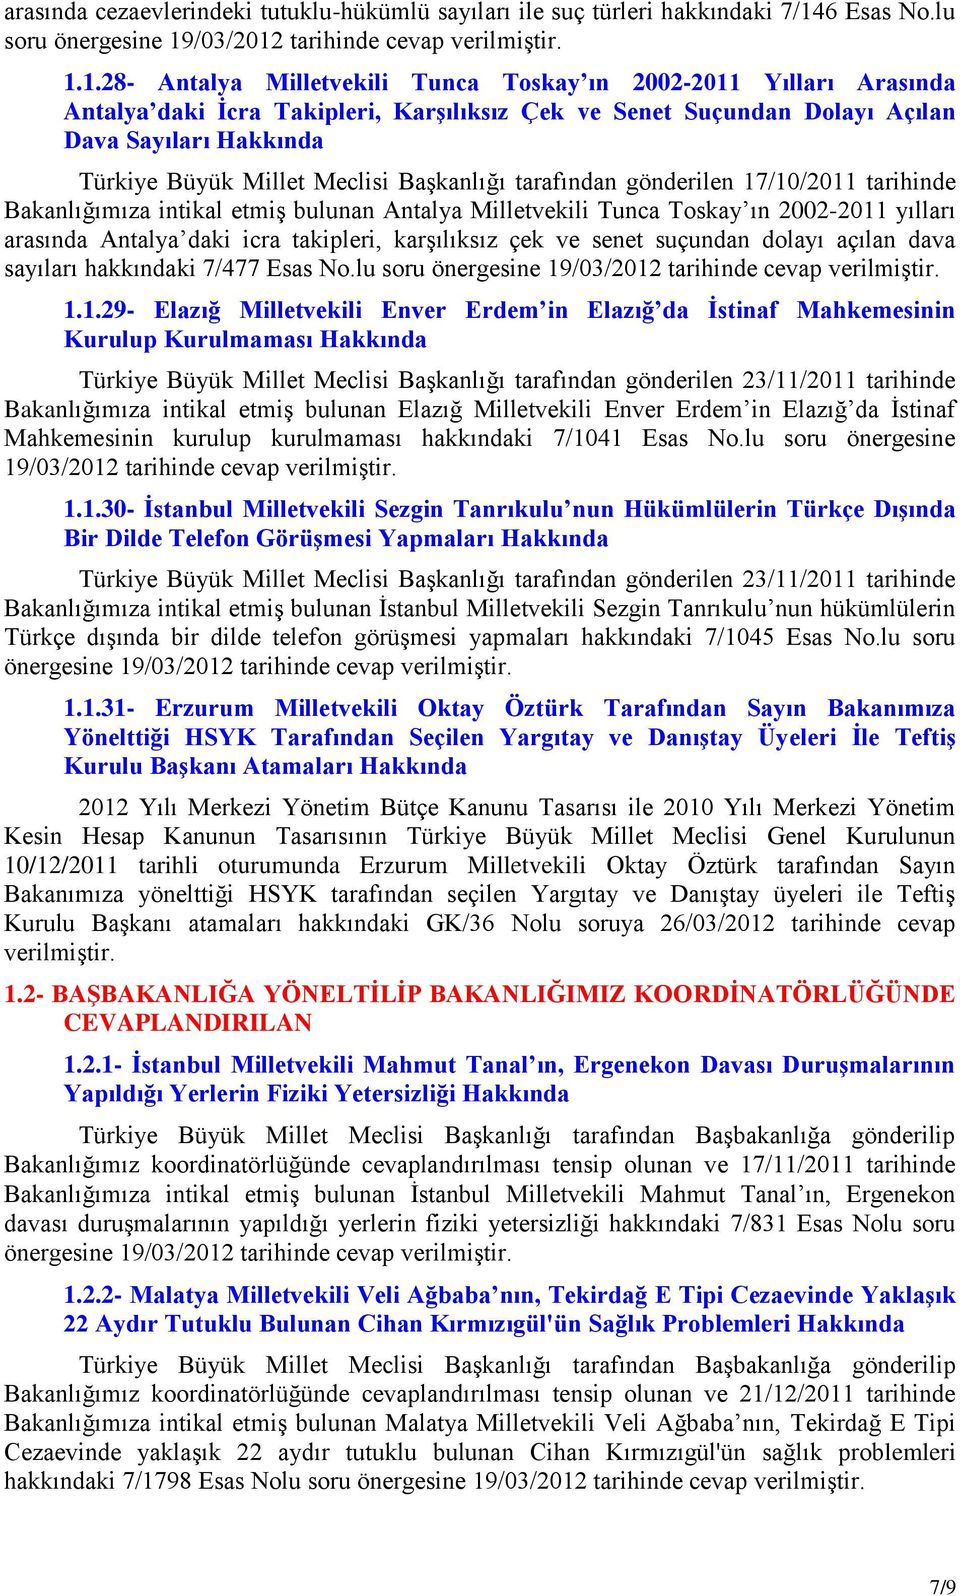 1.28- Antalya Milletvekili Tunca Toskay ın 2002-2011 Yılları Arasında Antalya daki Ġcra Takipleri, KarĢılıksız Çek ve Senet Suçundan Dolayı Açılan Dava Sayıları Hakkında Türkiye Büyük Millet Meclisi